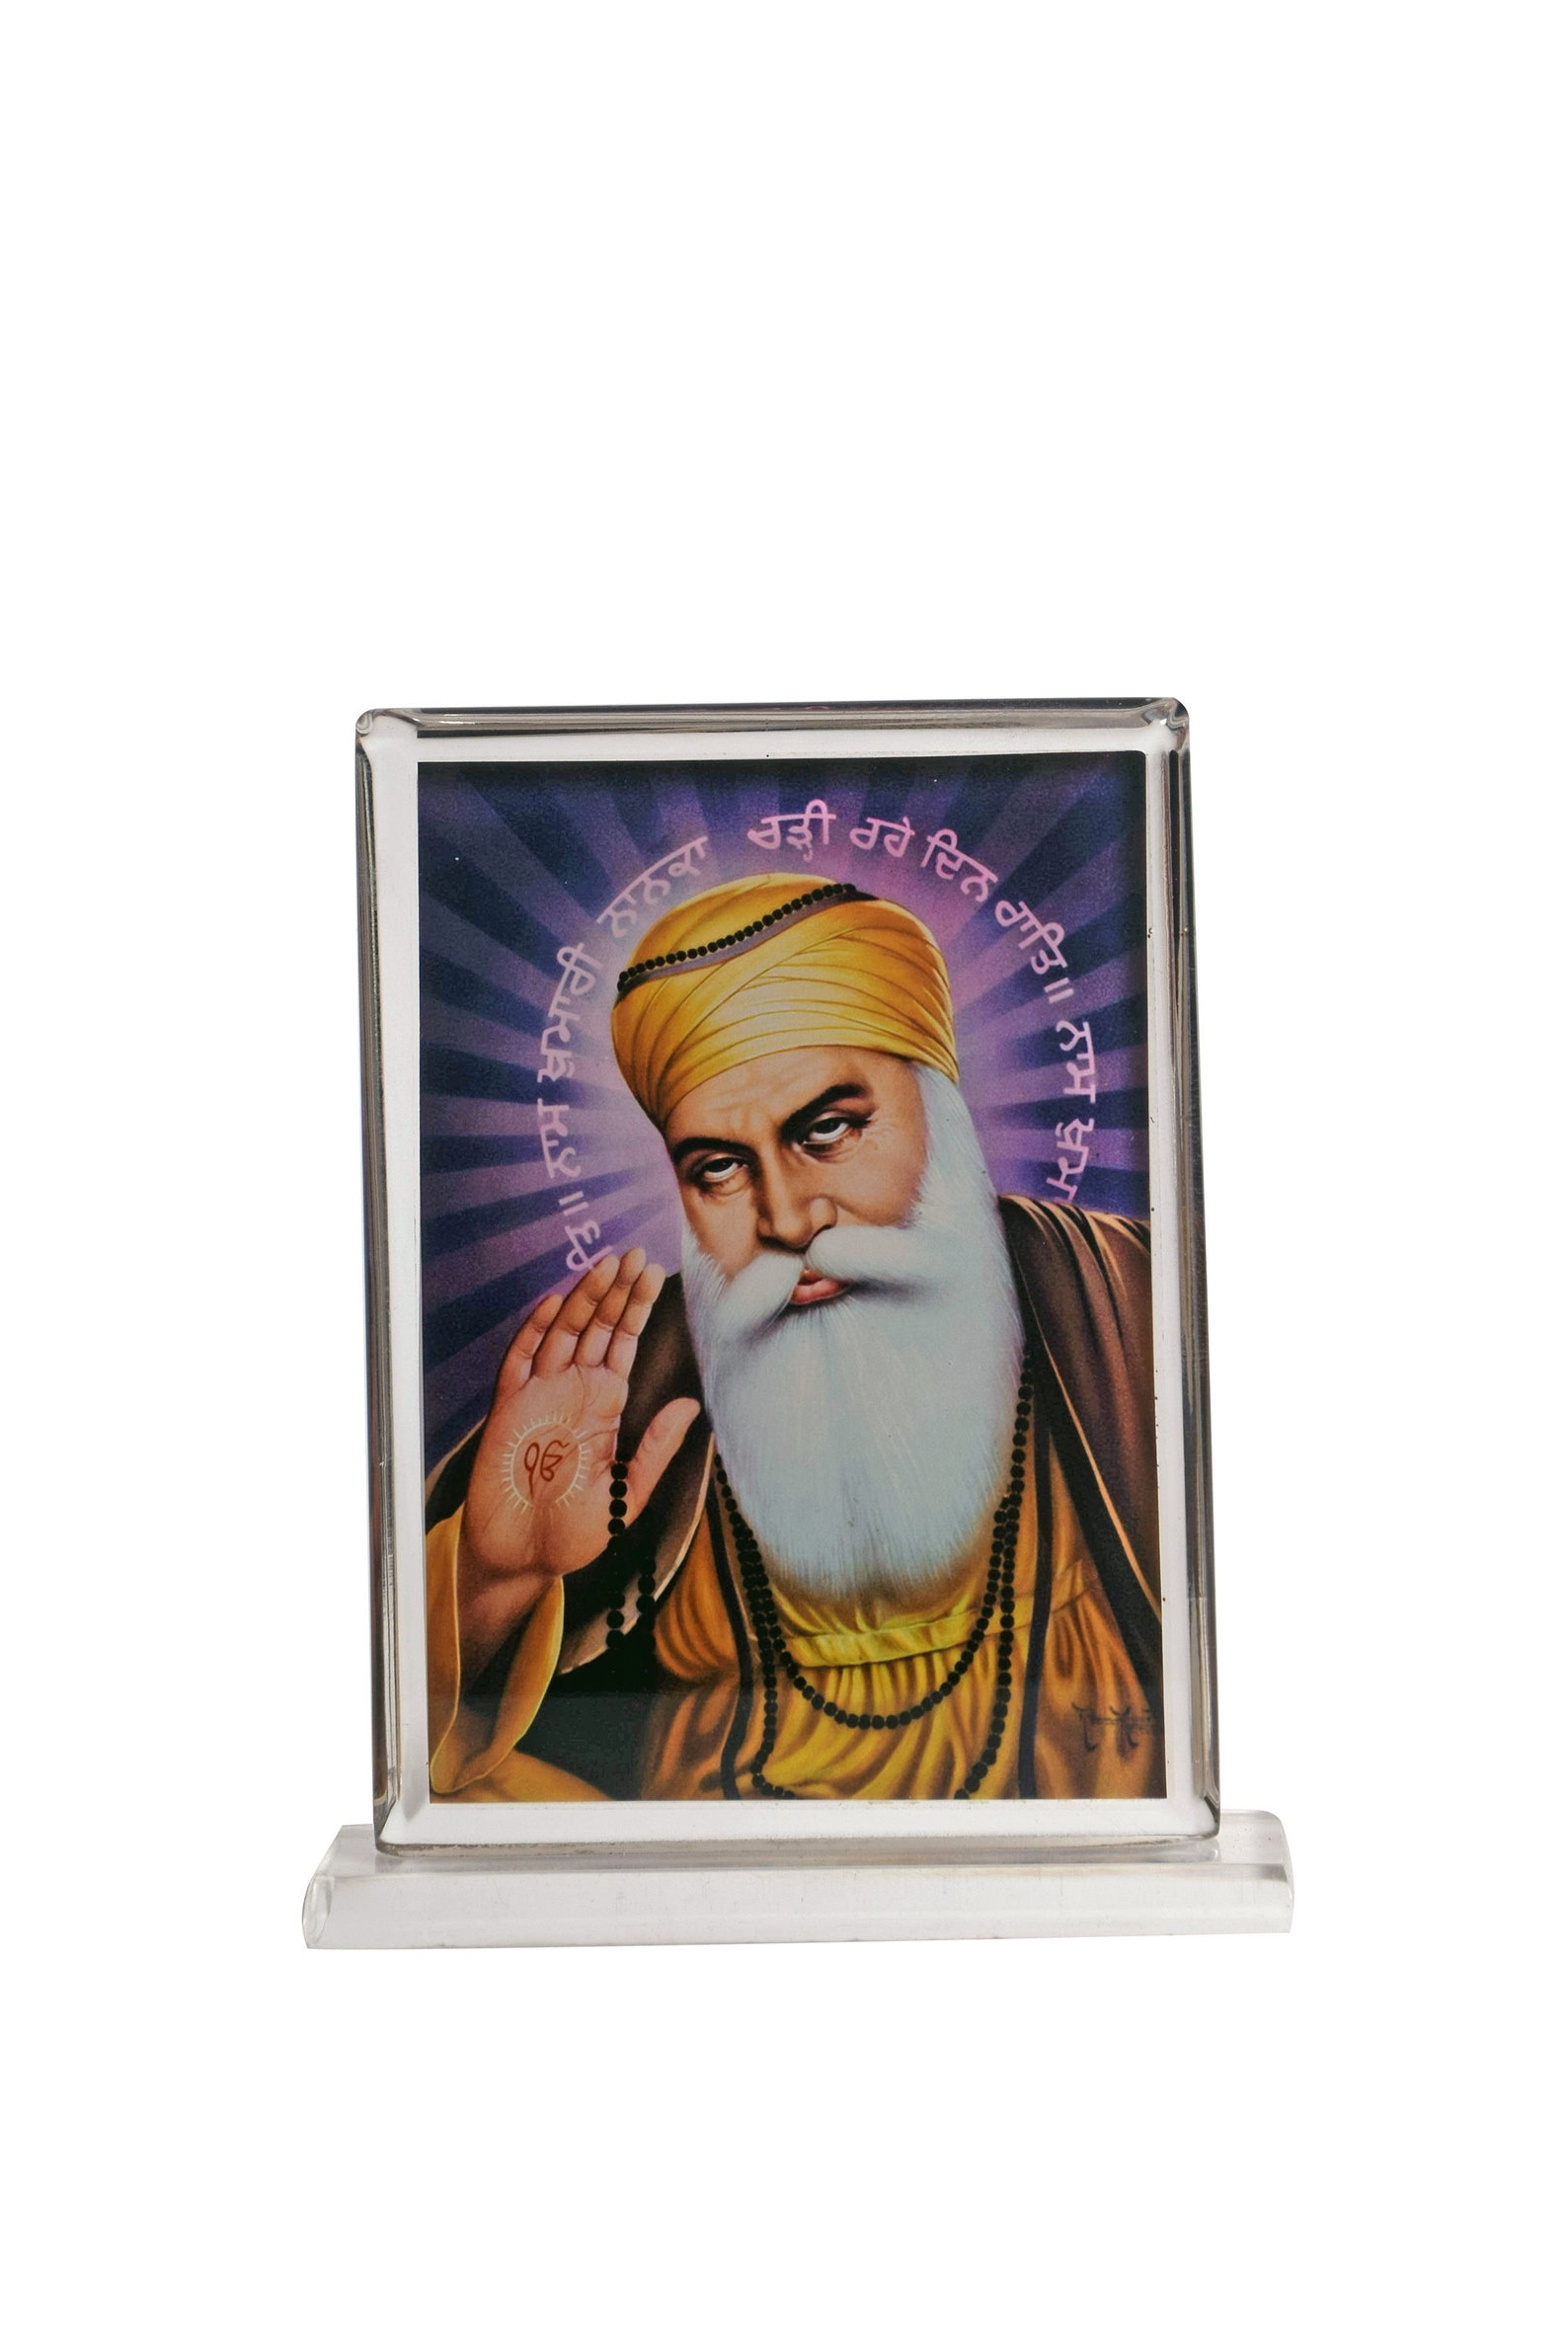 Gurunanak Dev Ji / Guru Nanak Sahib Acrylic Car Stand / | Etsy